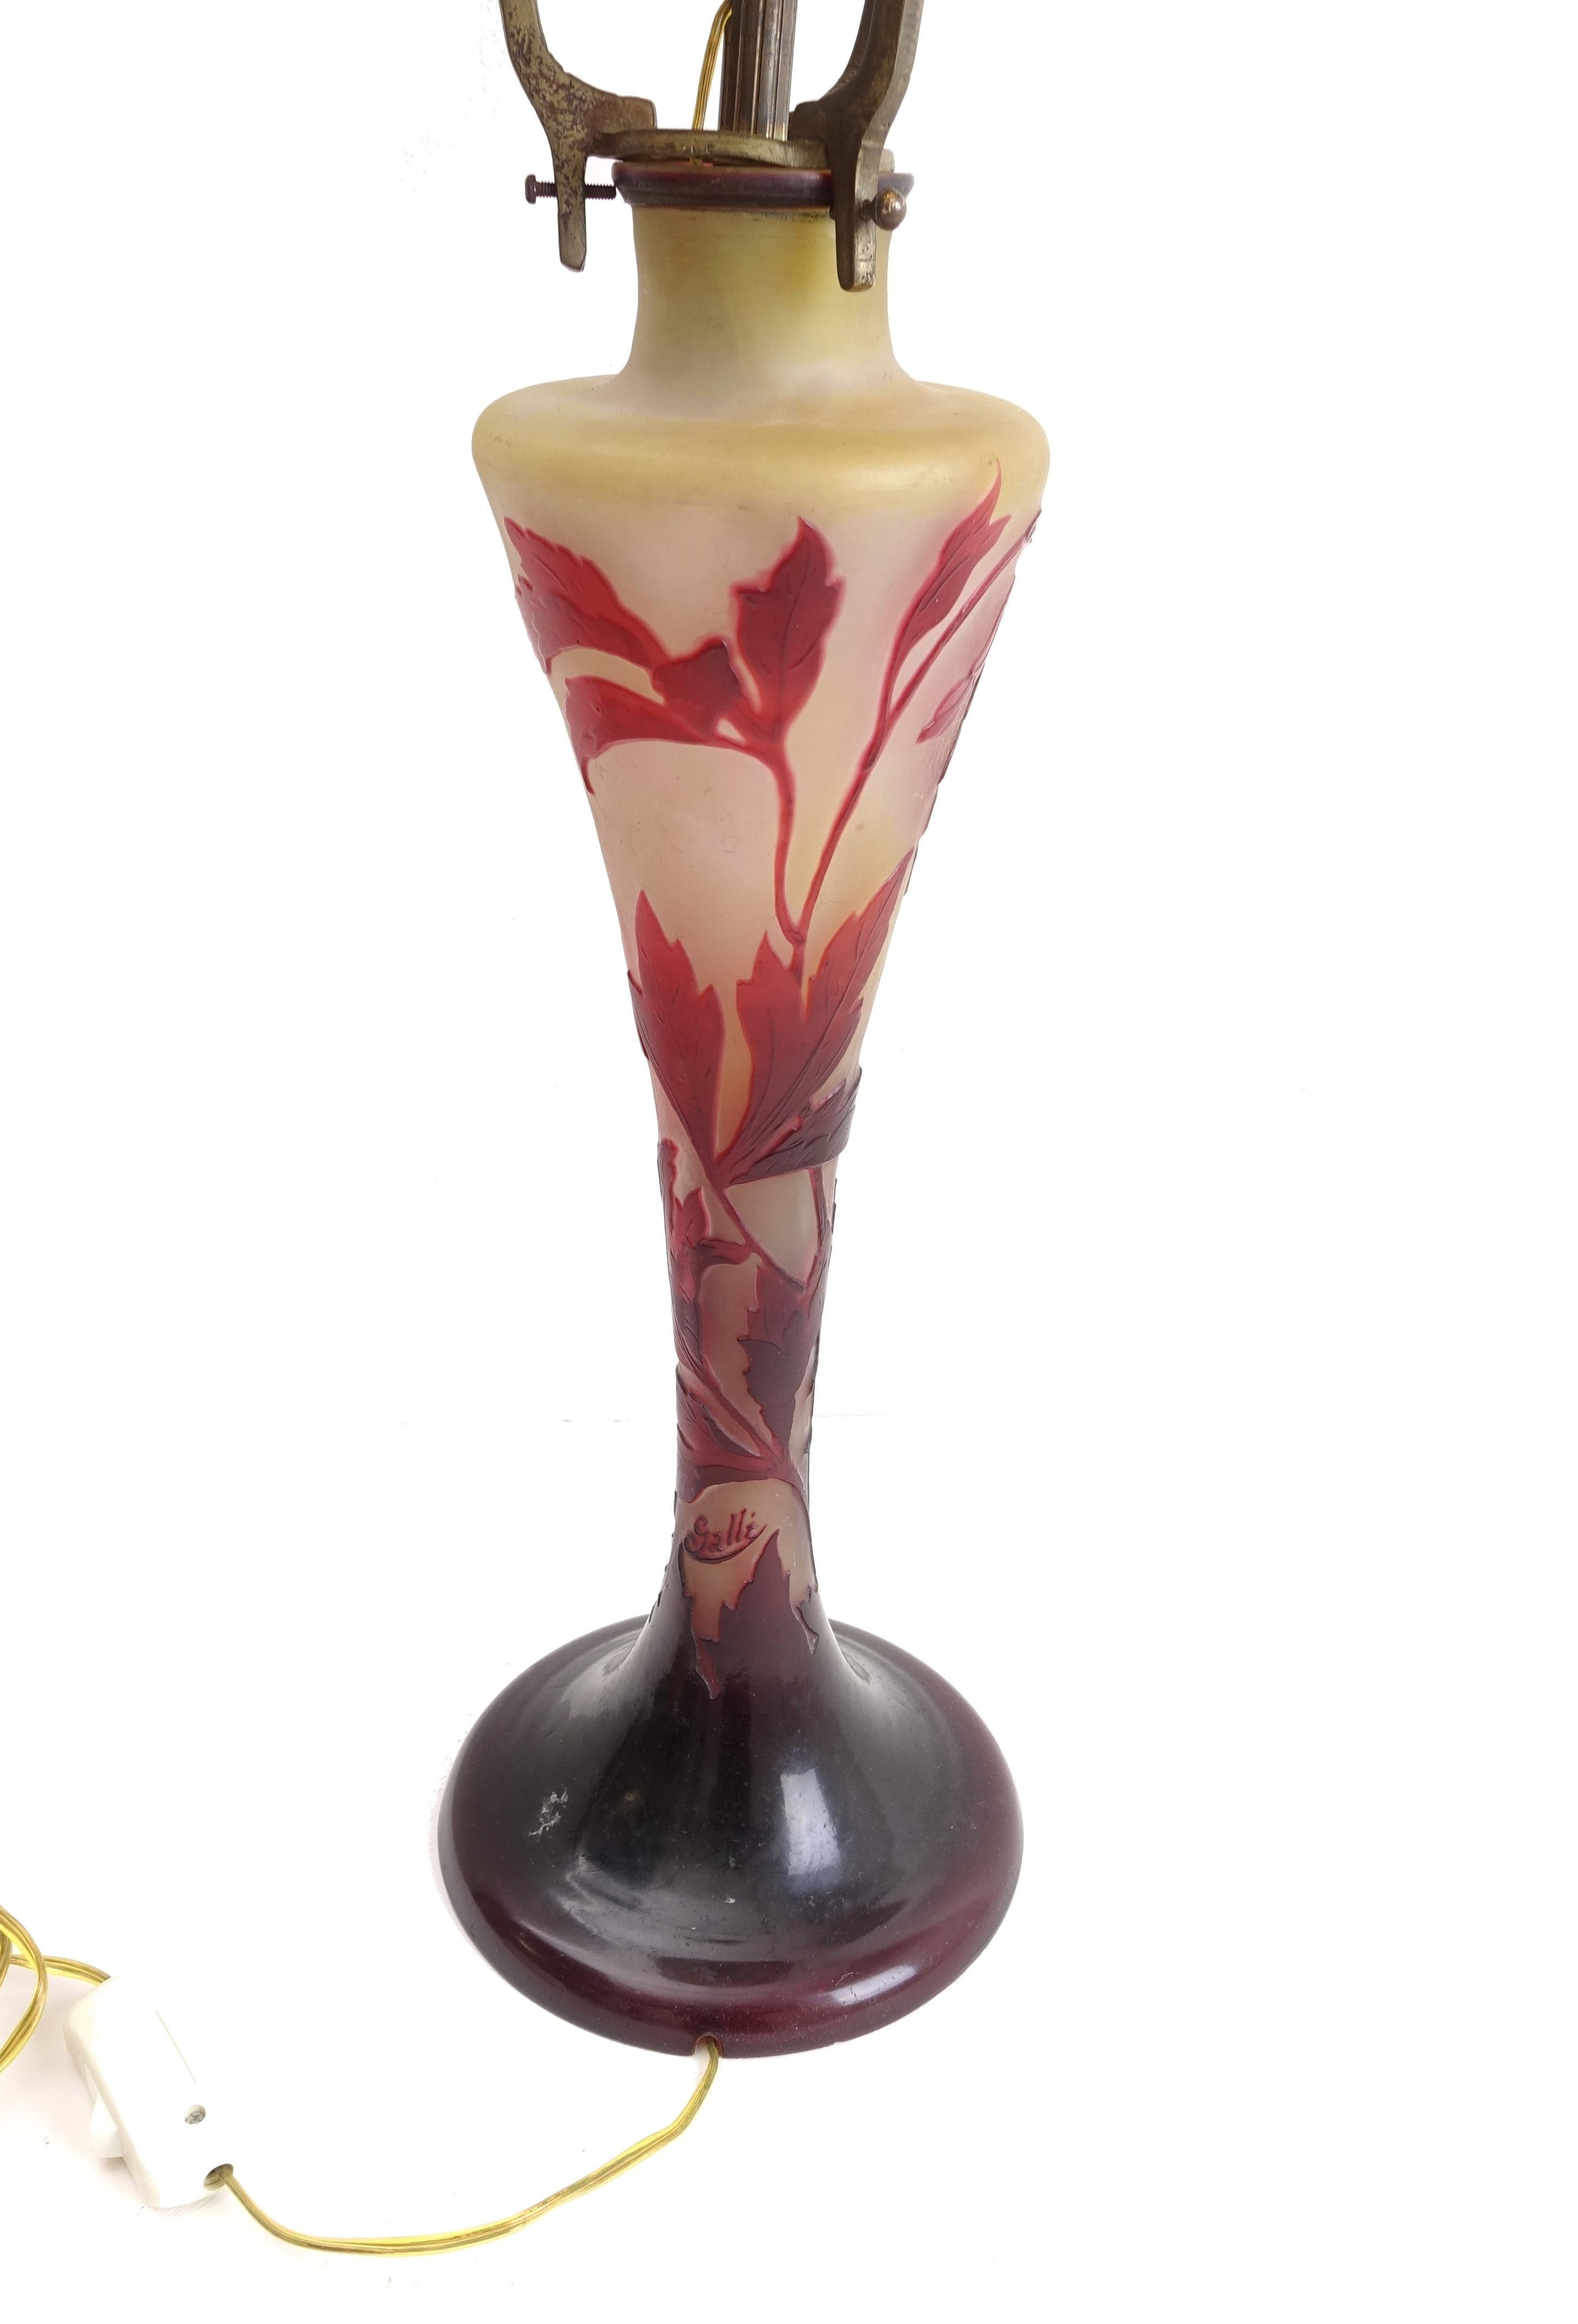 French Colored Glass Lamp Signed Emilé Gallé Liberty Art Nouveau, Original 1900s